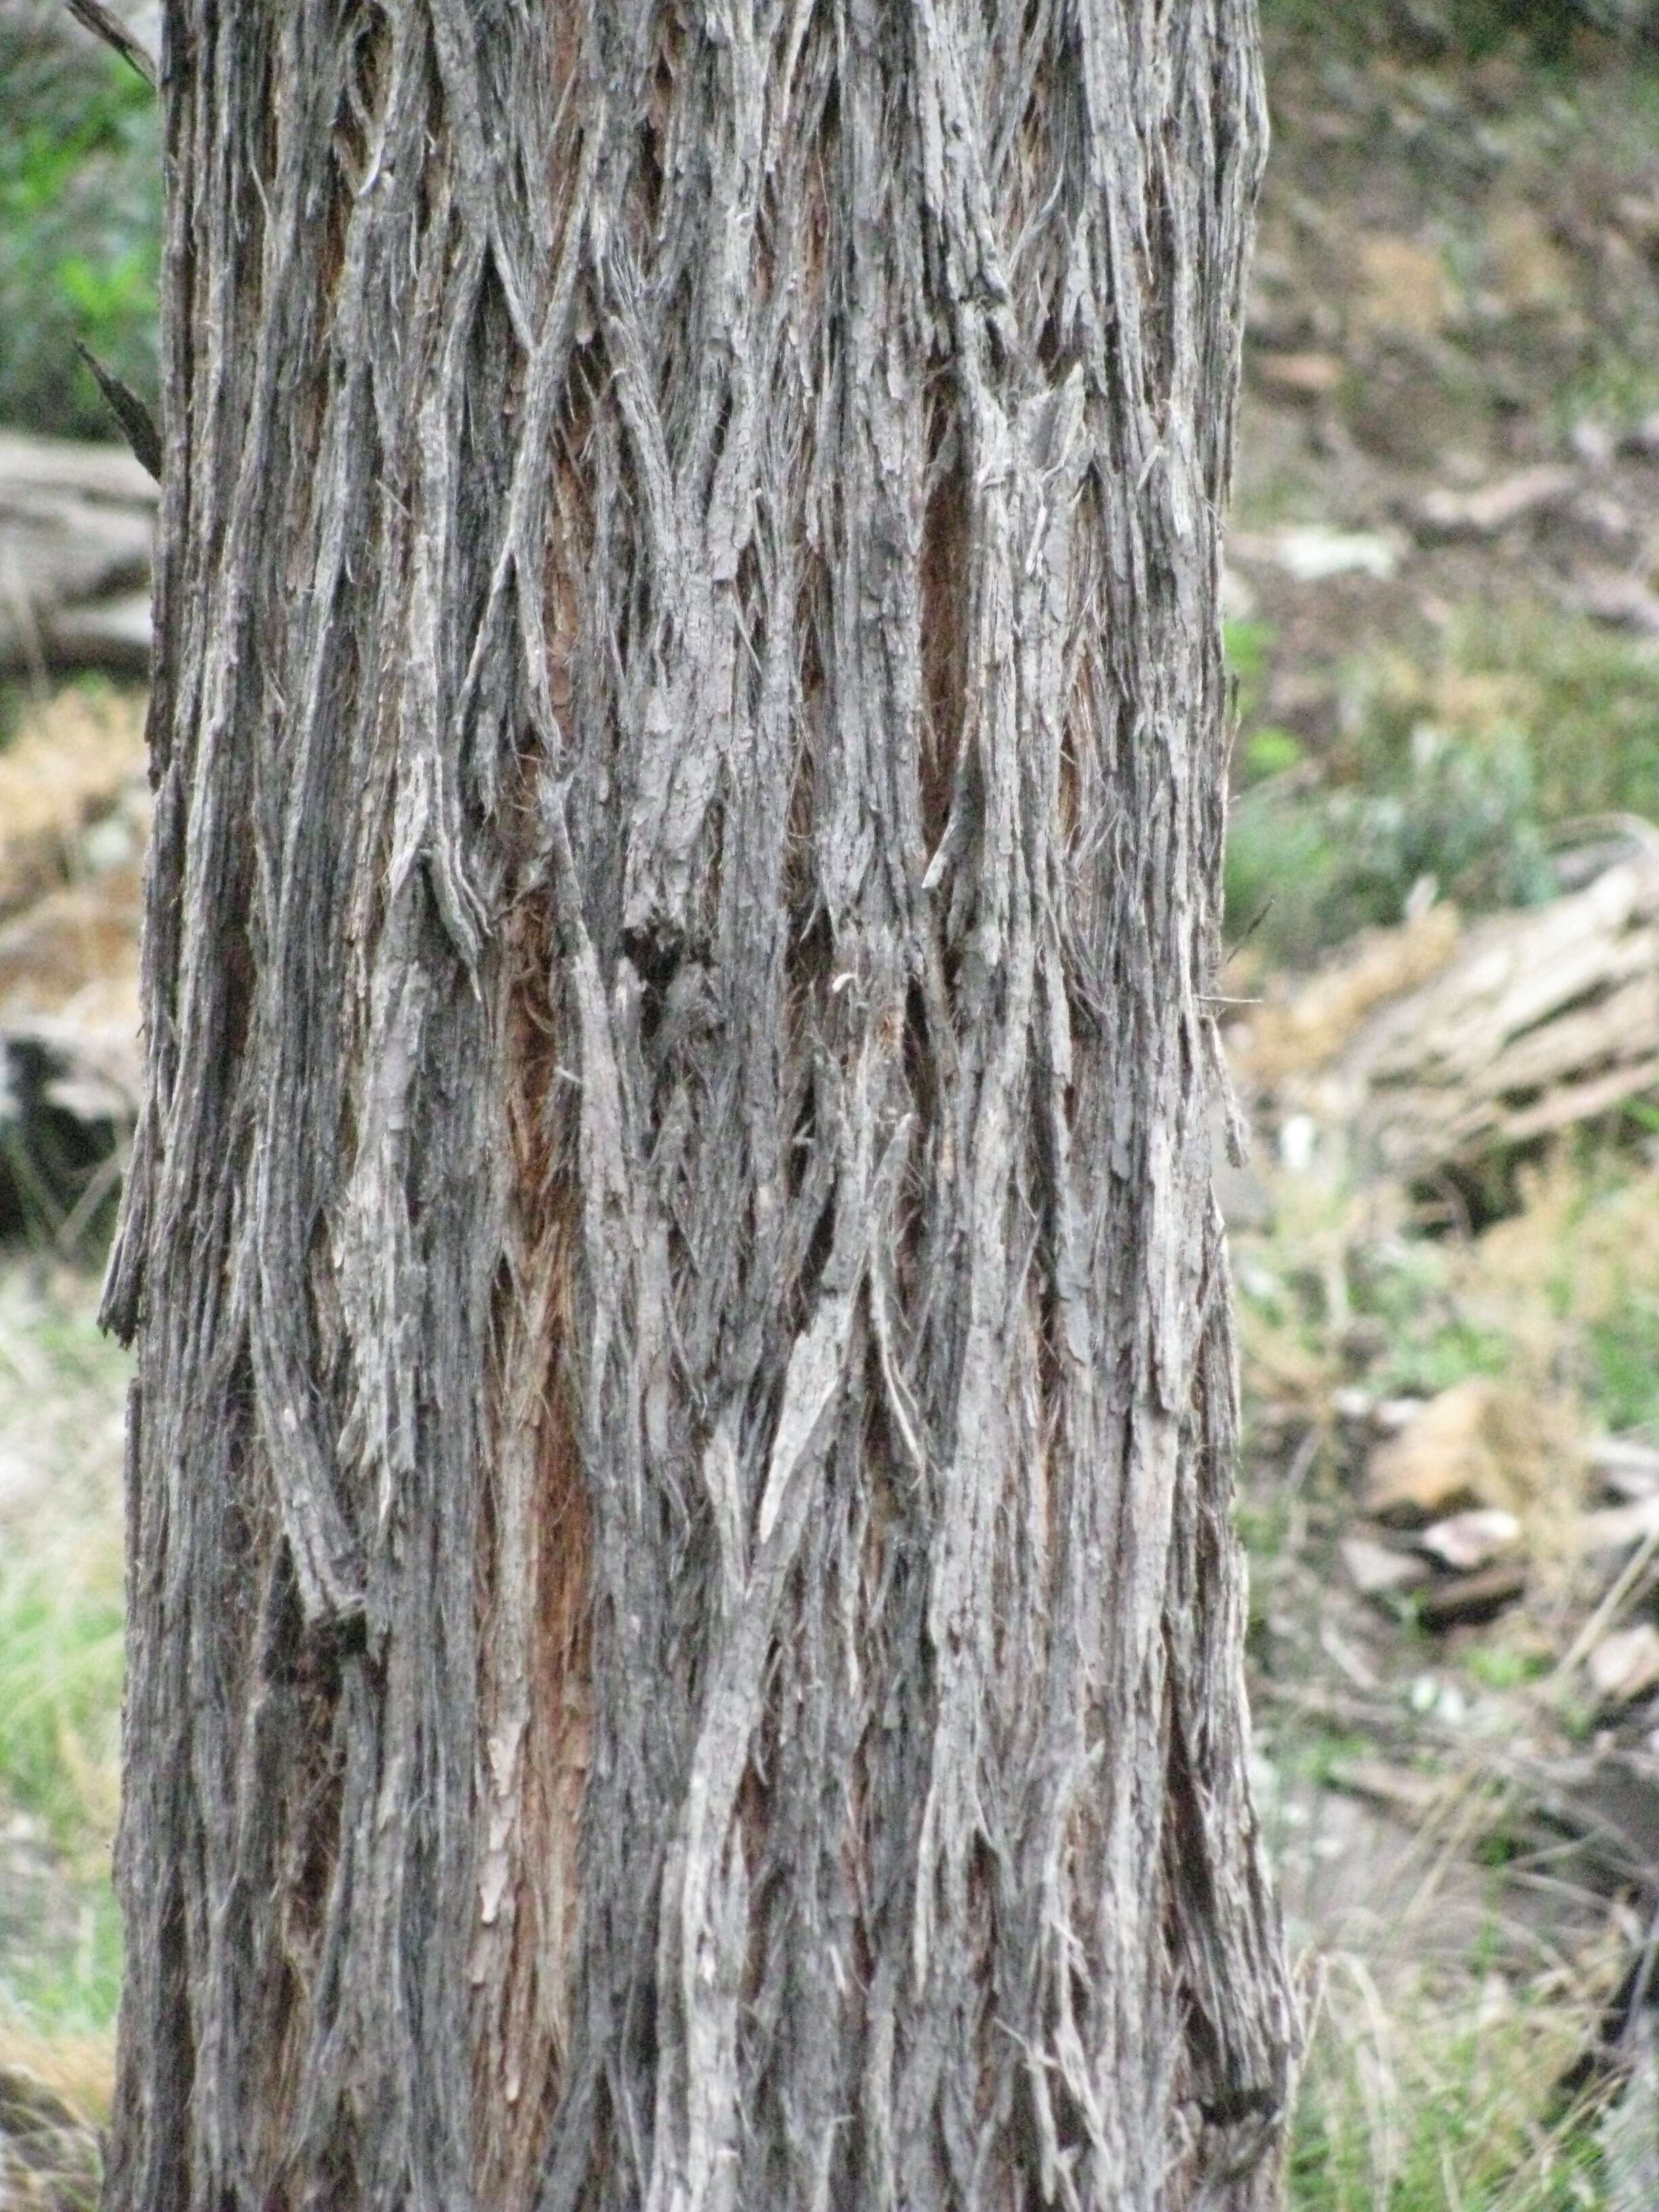 Image of brown stringybark